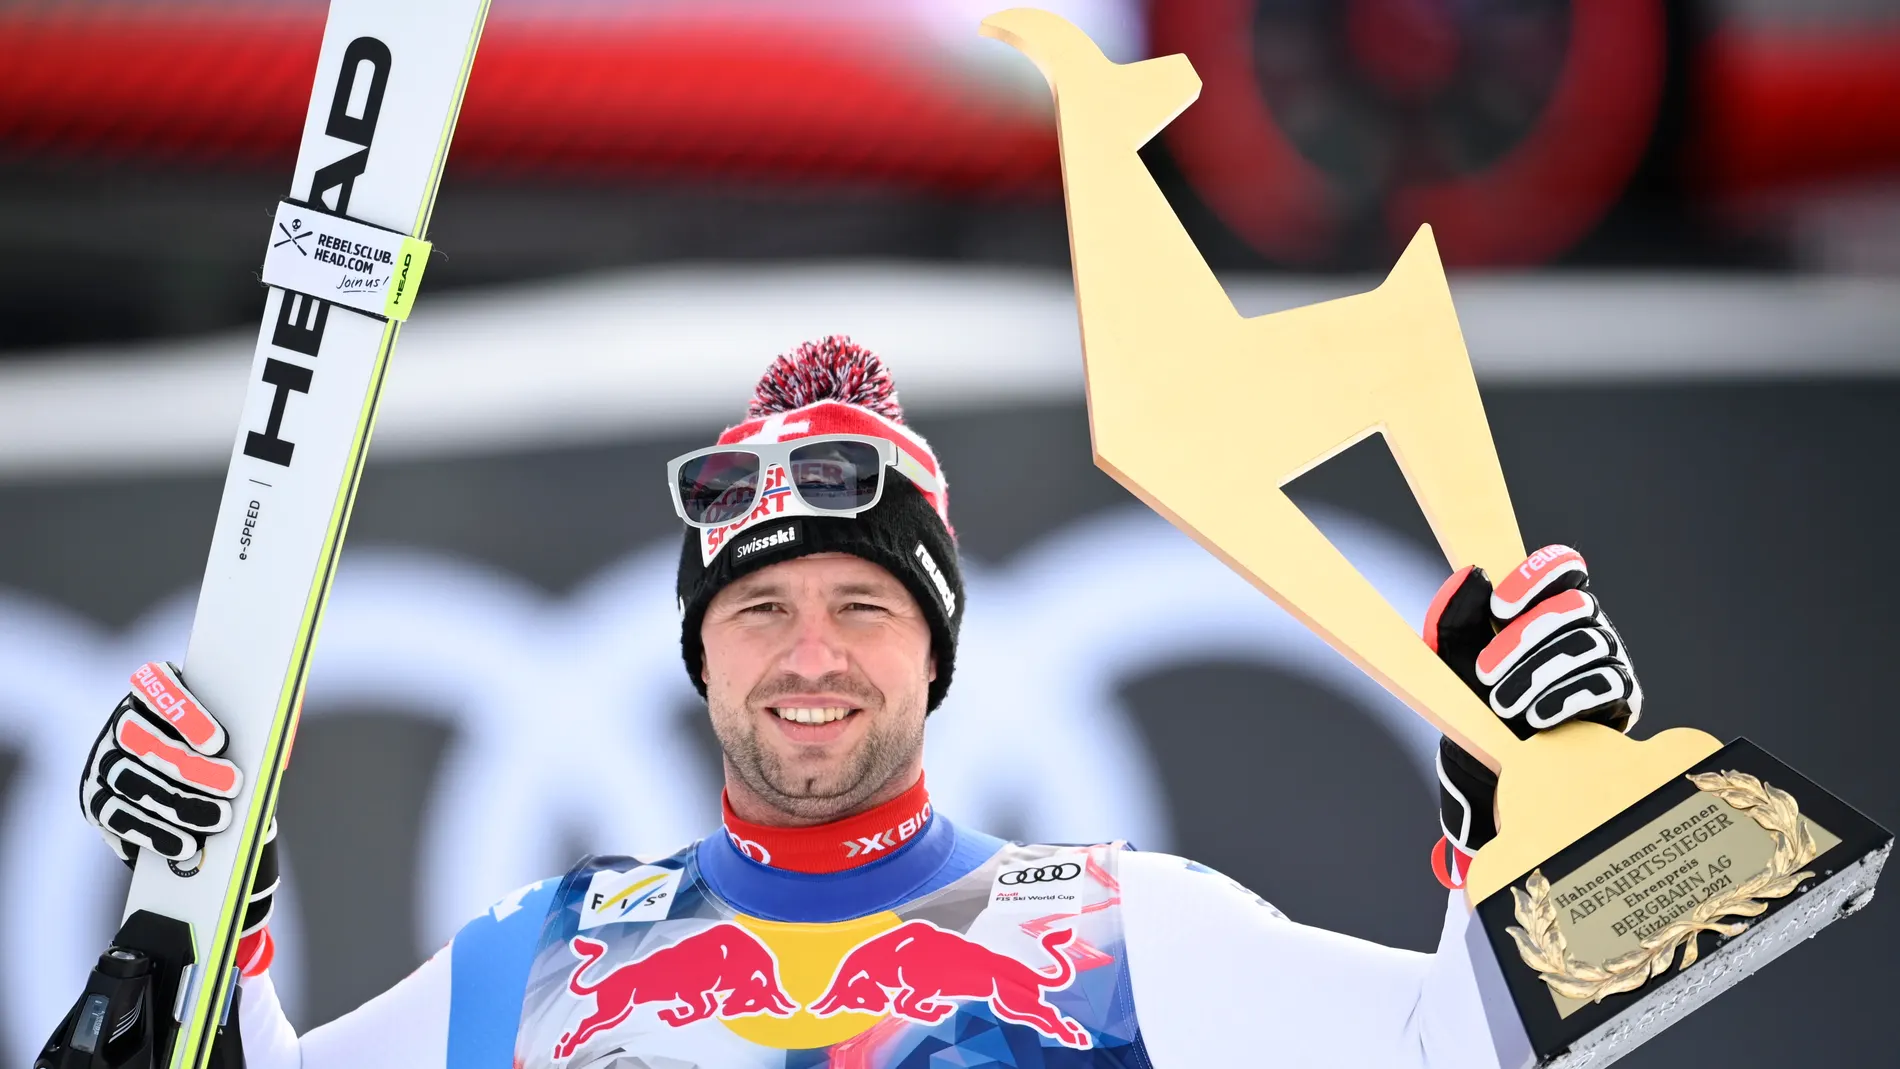 El suizo Beat Feuz celebra su victoria en el podio de la carrera de descenso masculino en la Copa del Mundo de Esquí Alpino de la FIS en Kitzbuehel, Austria, 24 de enero de 2021. EFE/EPA/CHRISTIAN BRUNA